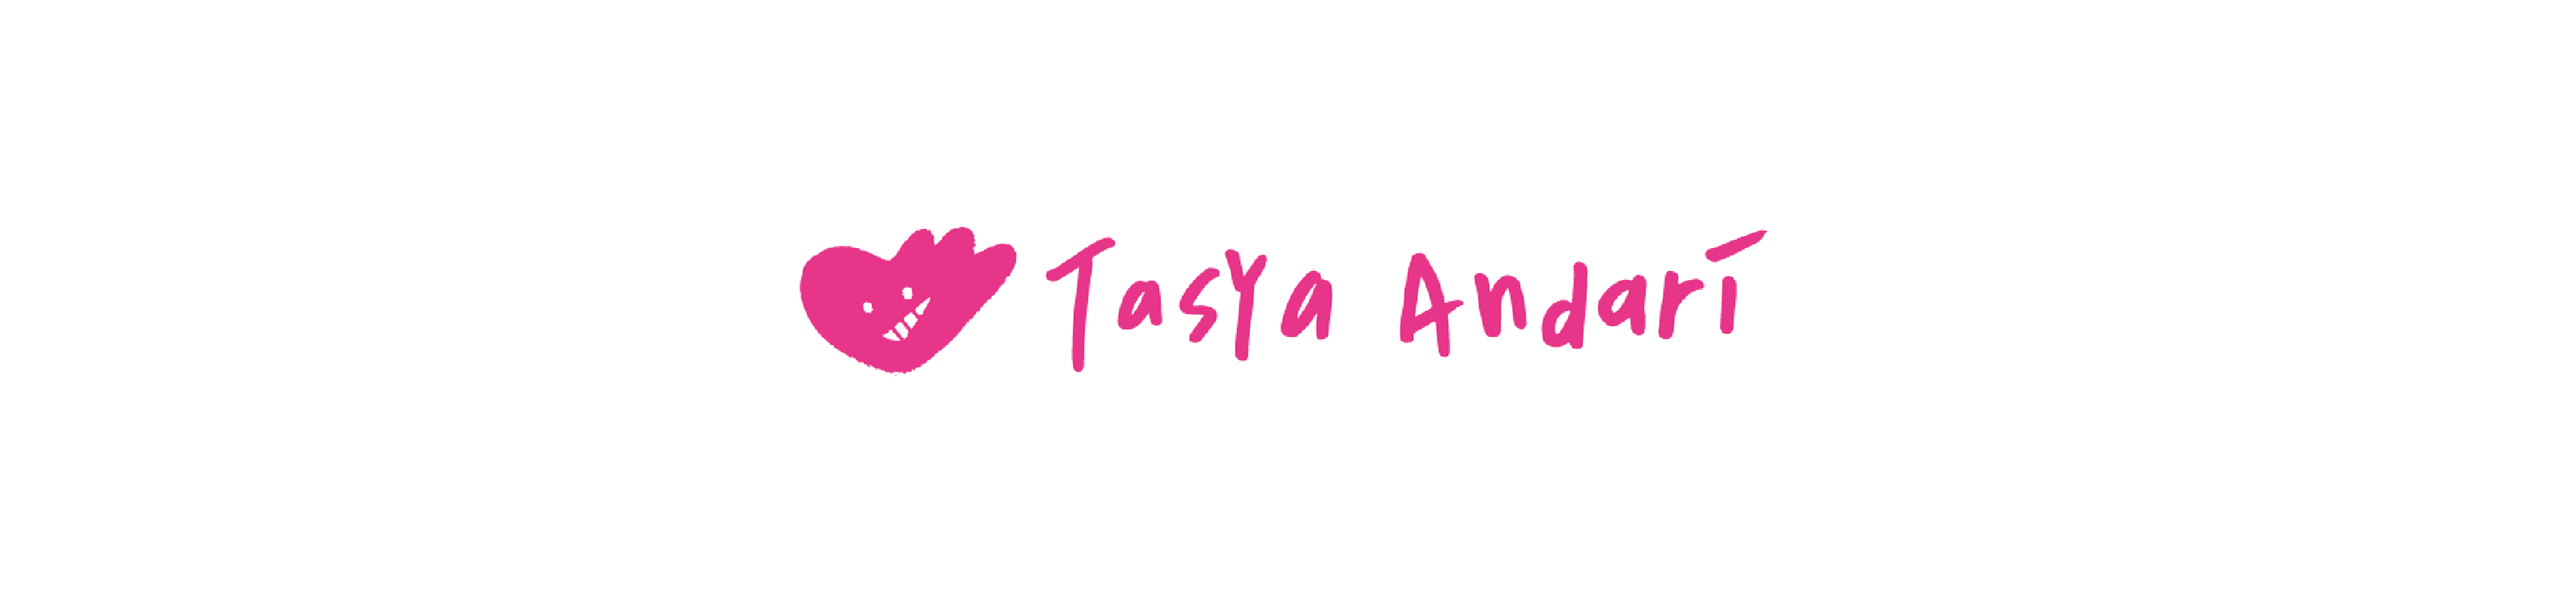 Tasya Andari